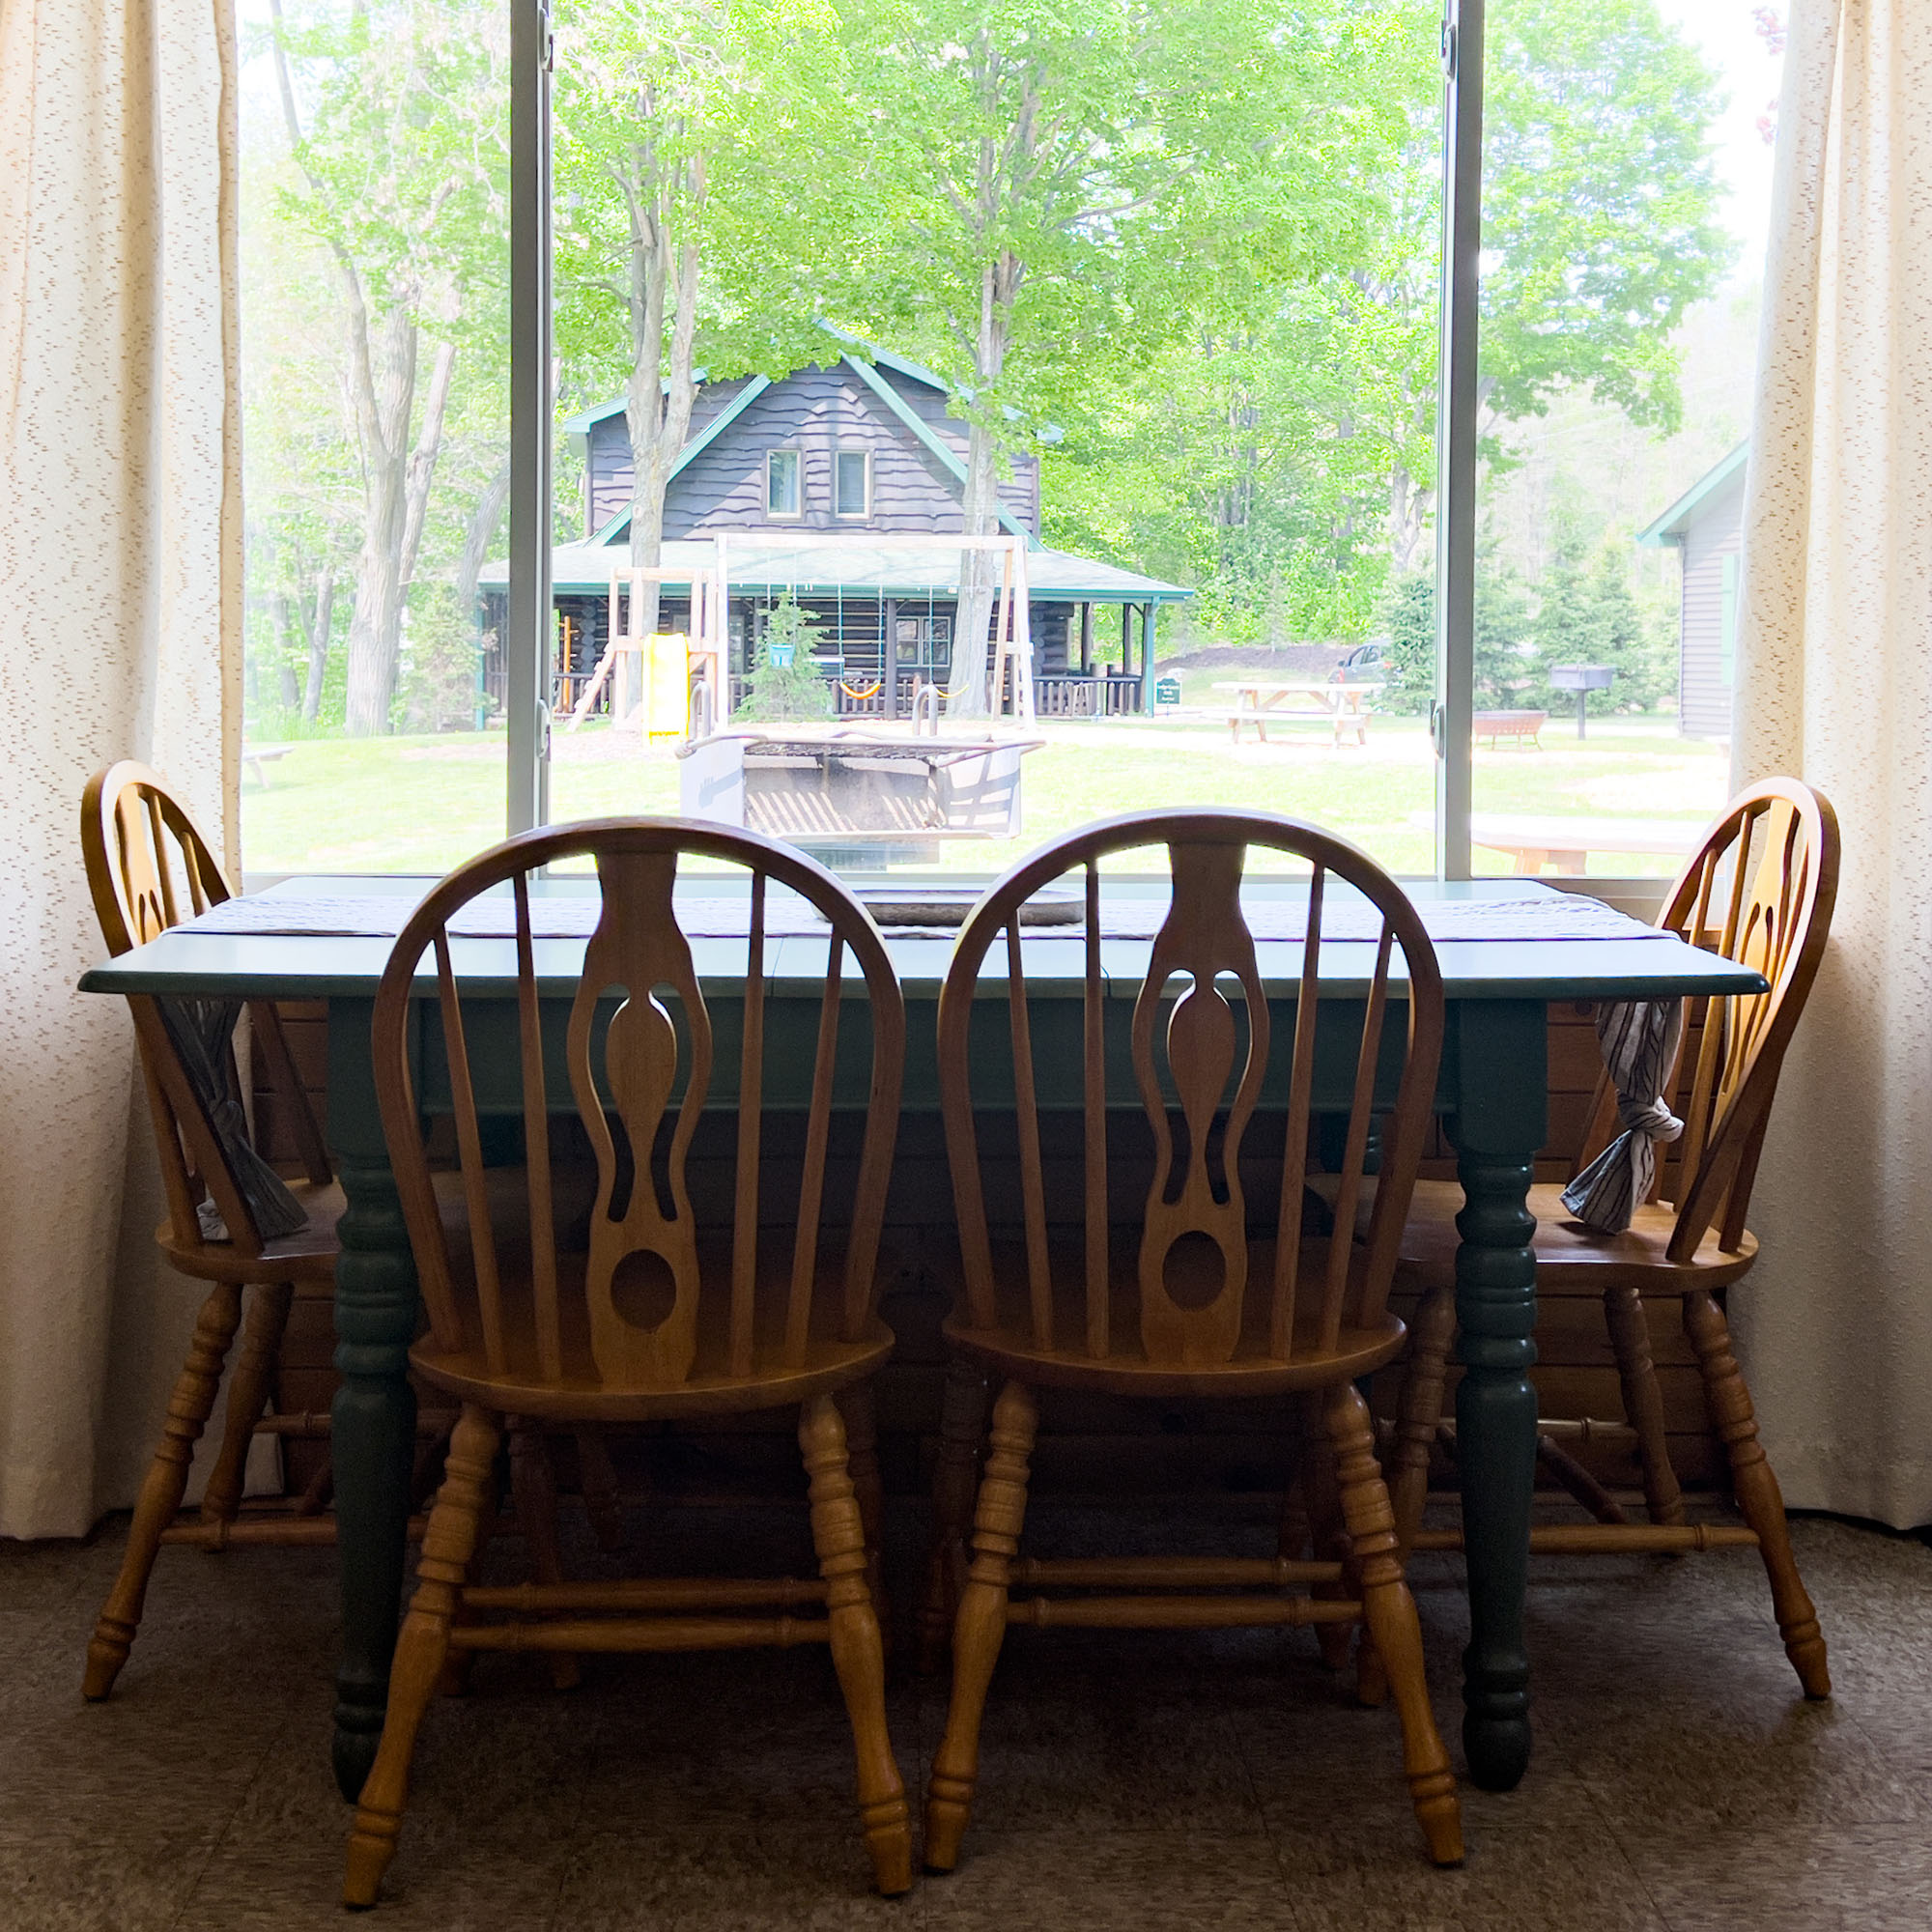 Cabin 2 - Dining Table at Sleeping Bear Resort